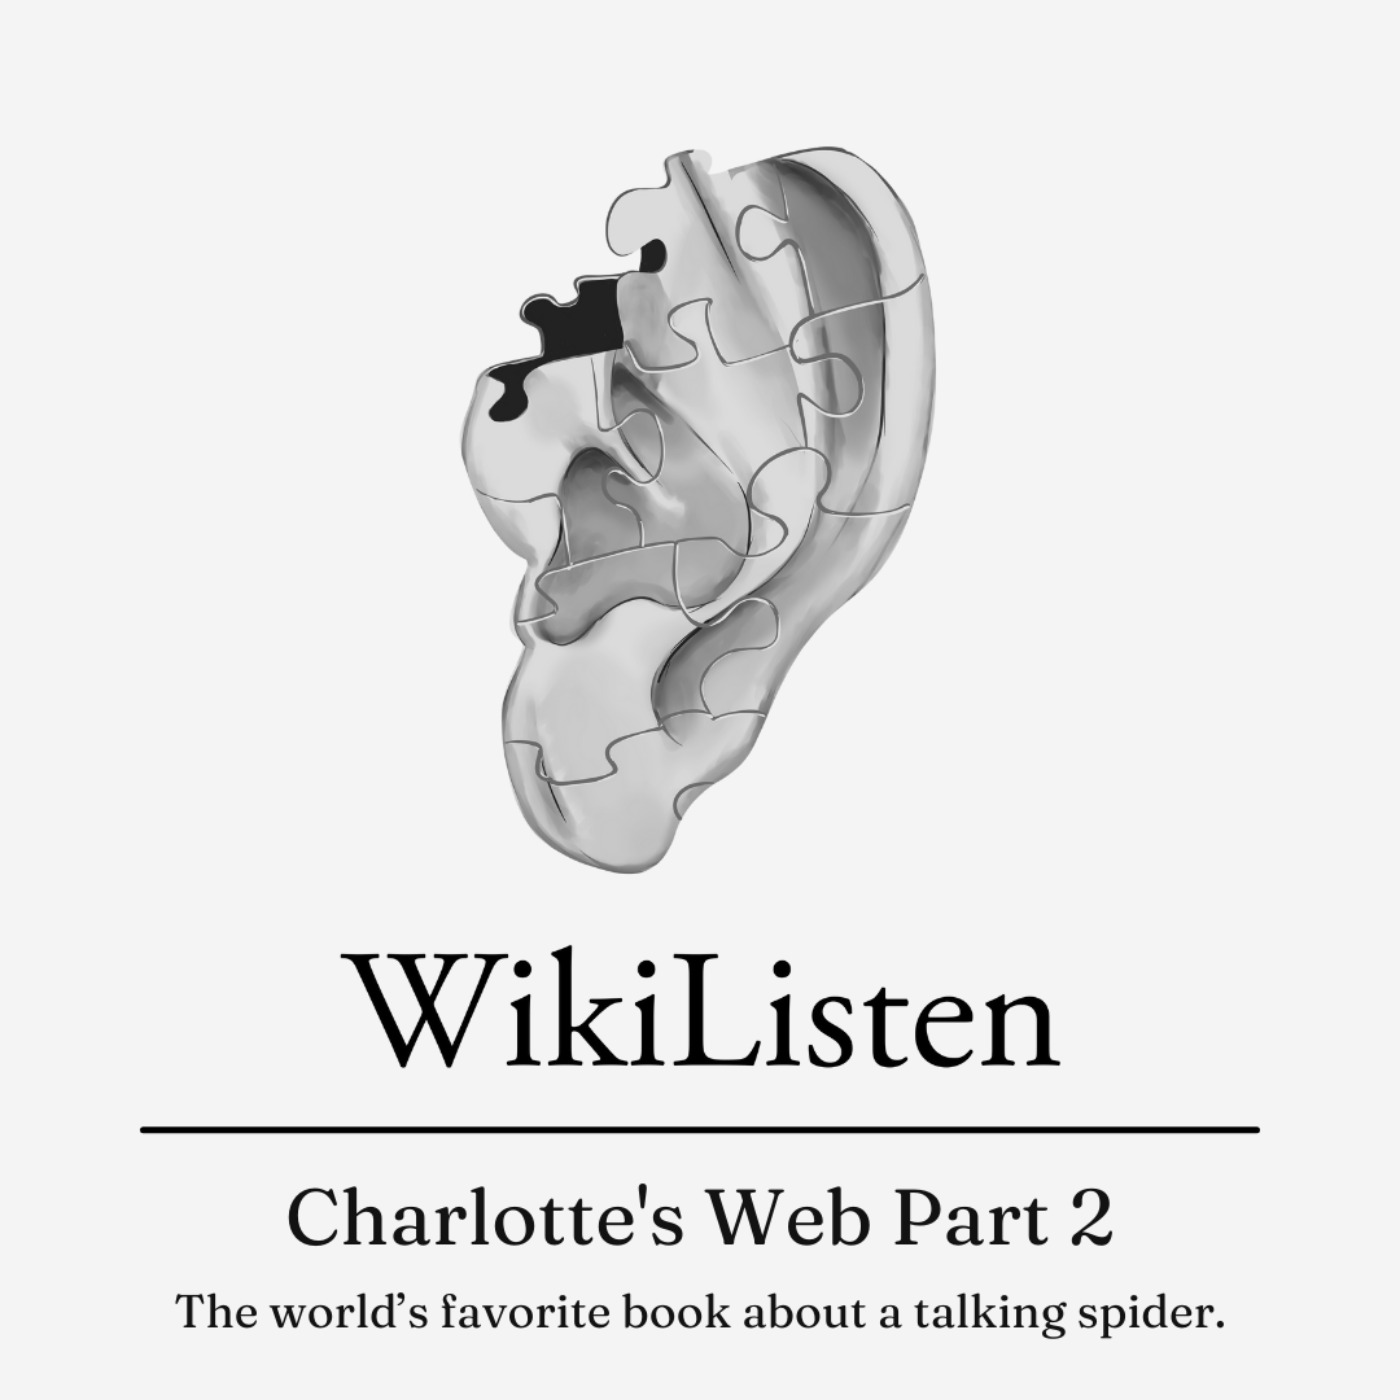 Charlotte's Web Part 2